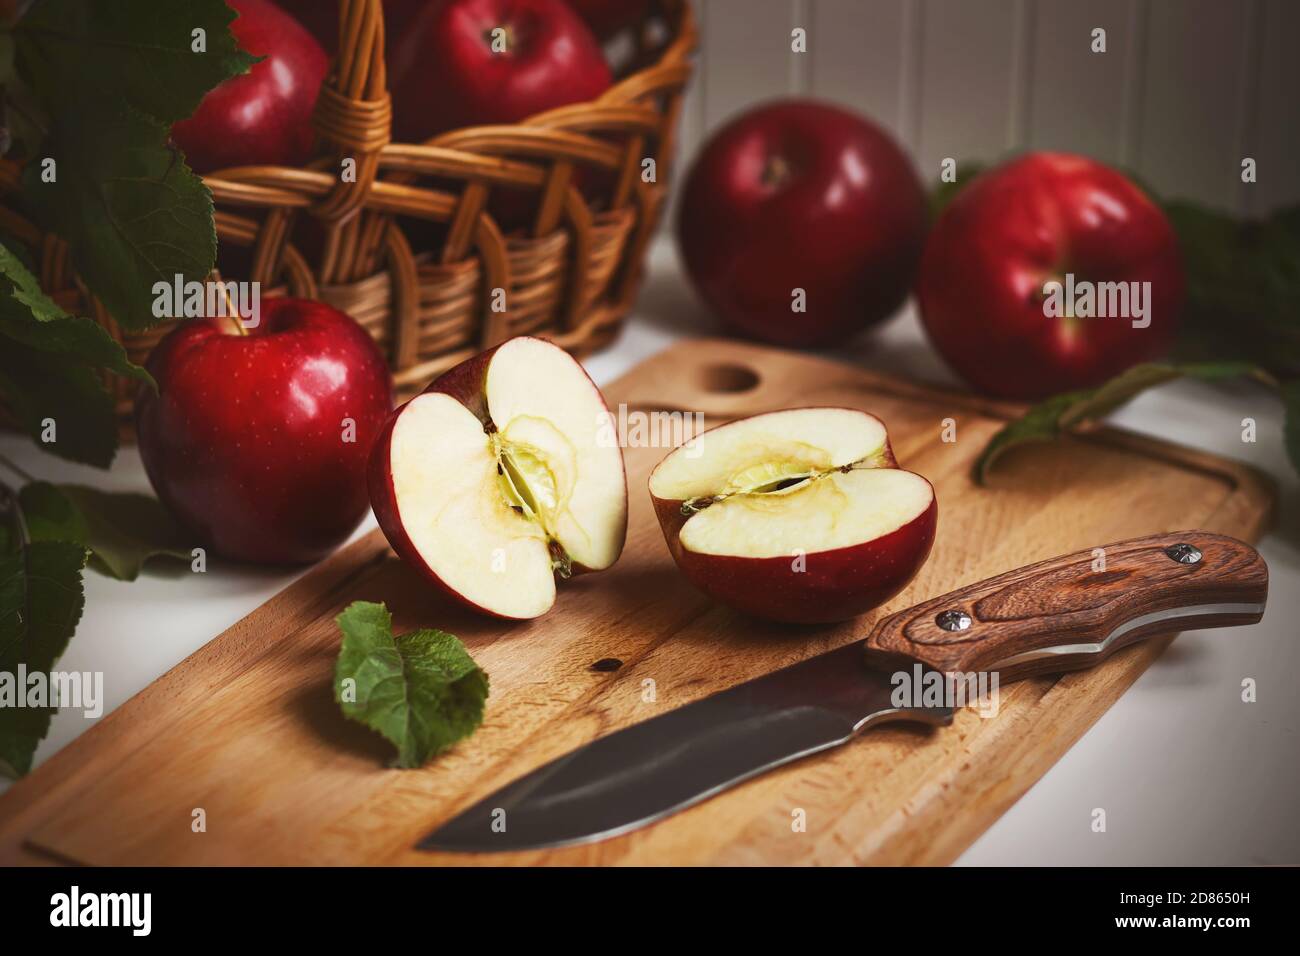 Sur la table de cuisine encore la vie - panier en osier avec des pommes rouges mûres sucrées, à côté d'elle une planche en bois sur laquelle repose une pomme coupée en deux et un k aiguisé Banque D'Images